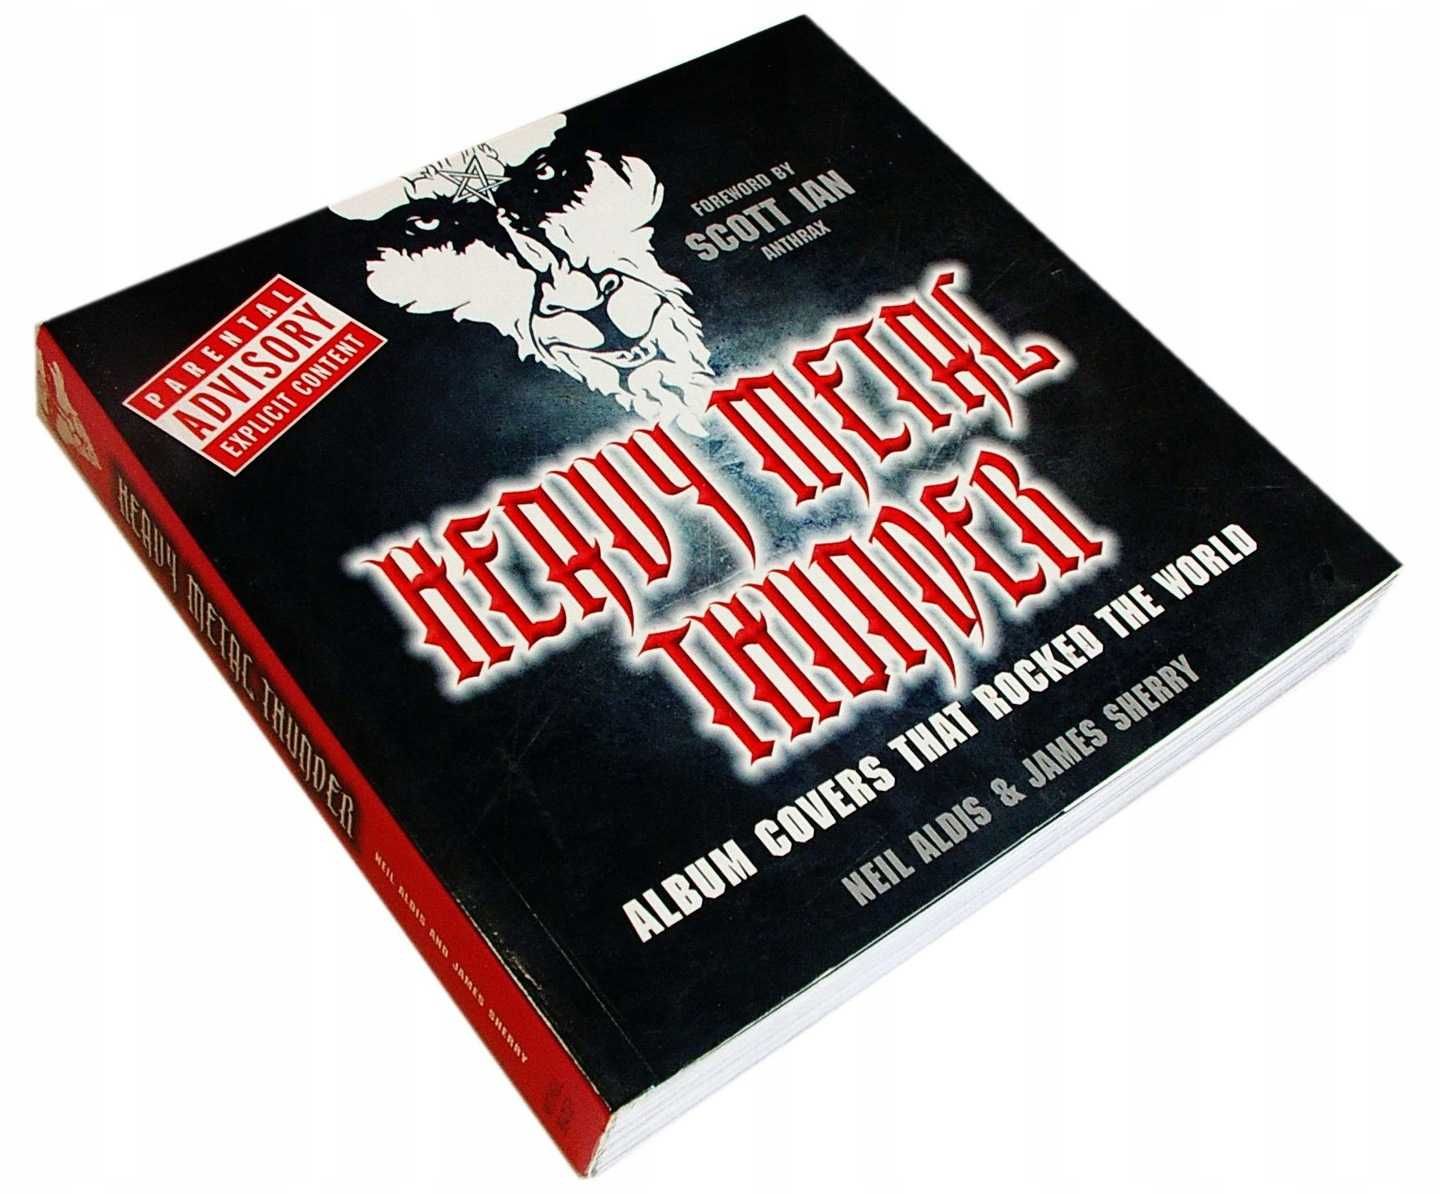 HEAVY METAL THUNDER Album Covers That Rocked The World - Okładki płyt